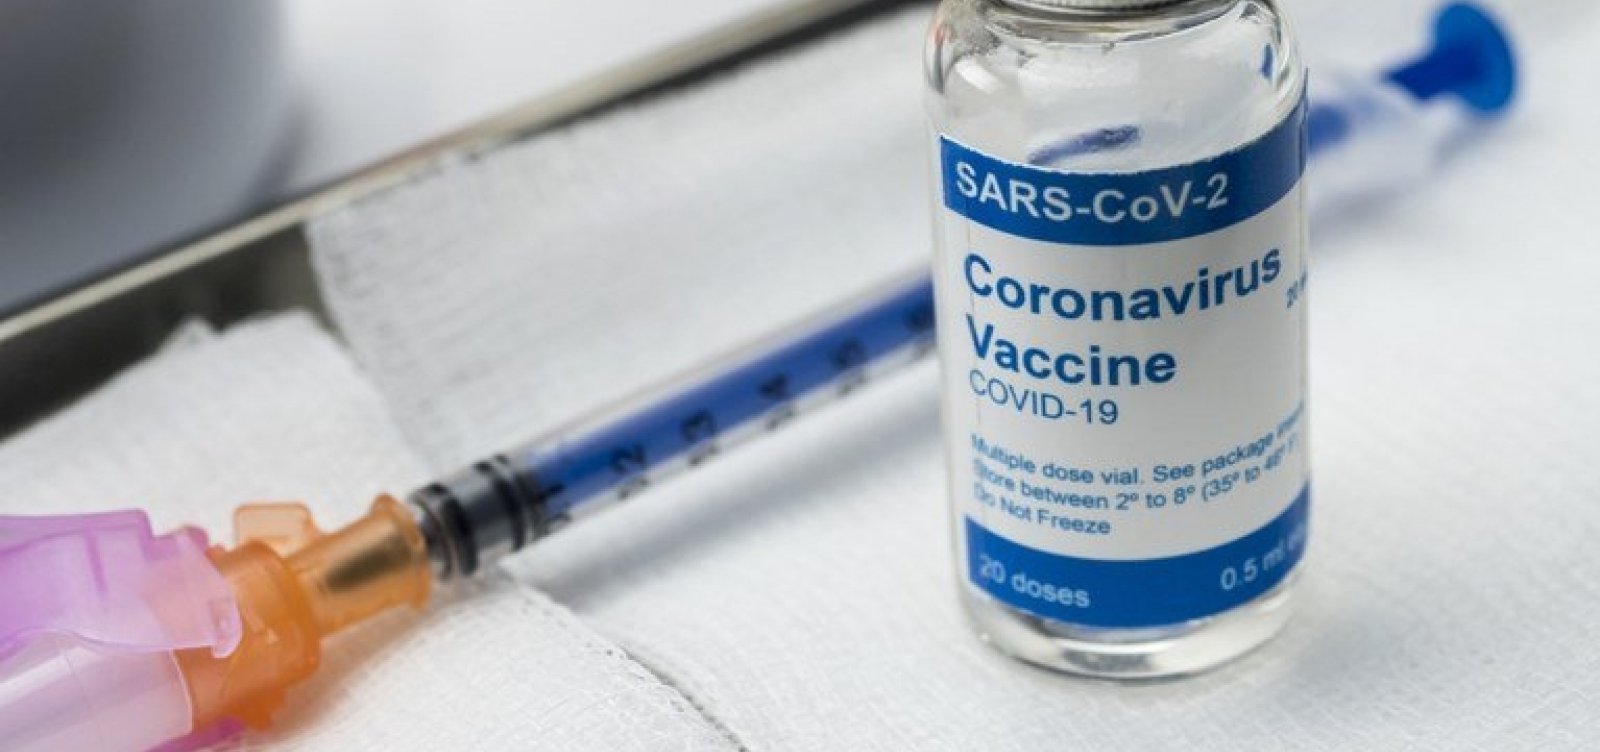 Conselho de secretários de Saúde pede que plano de vacinação adquira todas as vacinas contra Covid